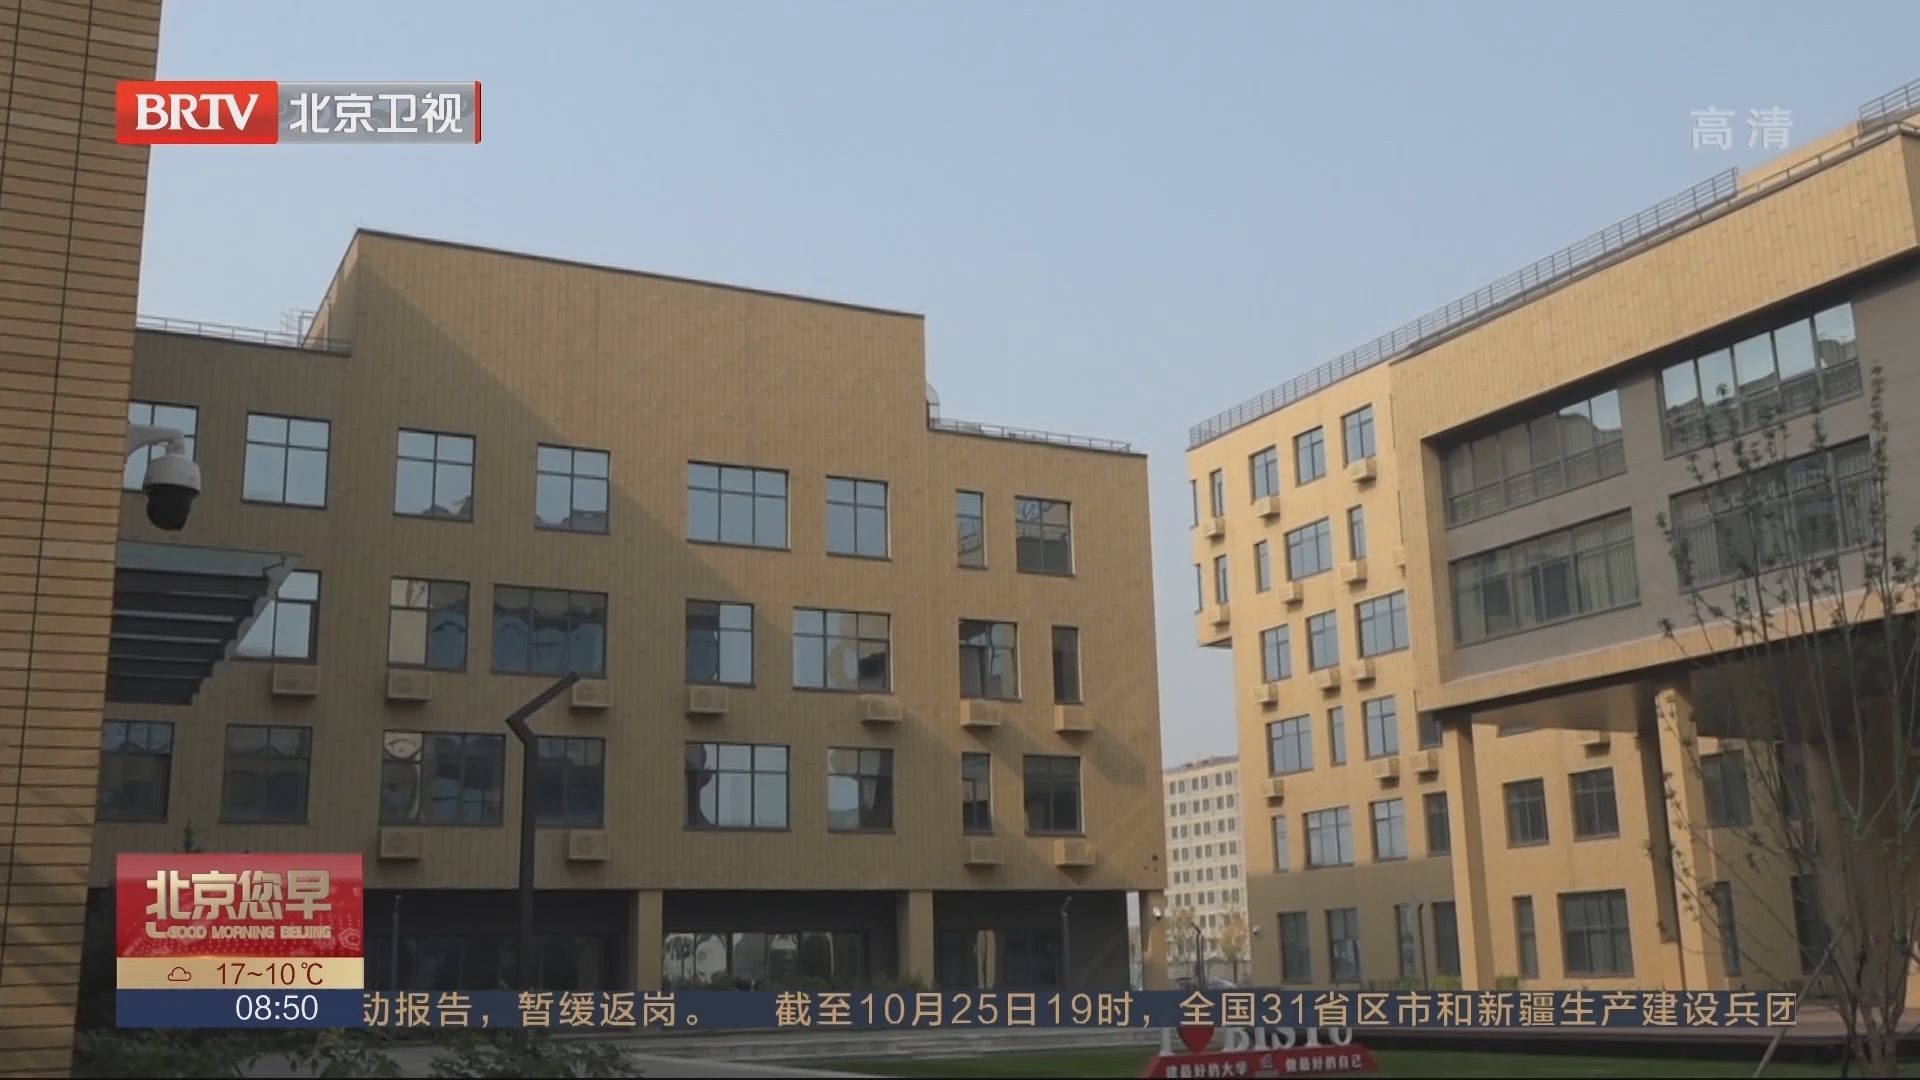 北京信息科技大学新校区正式启动主体搬迁